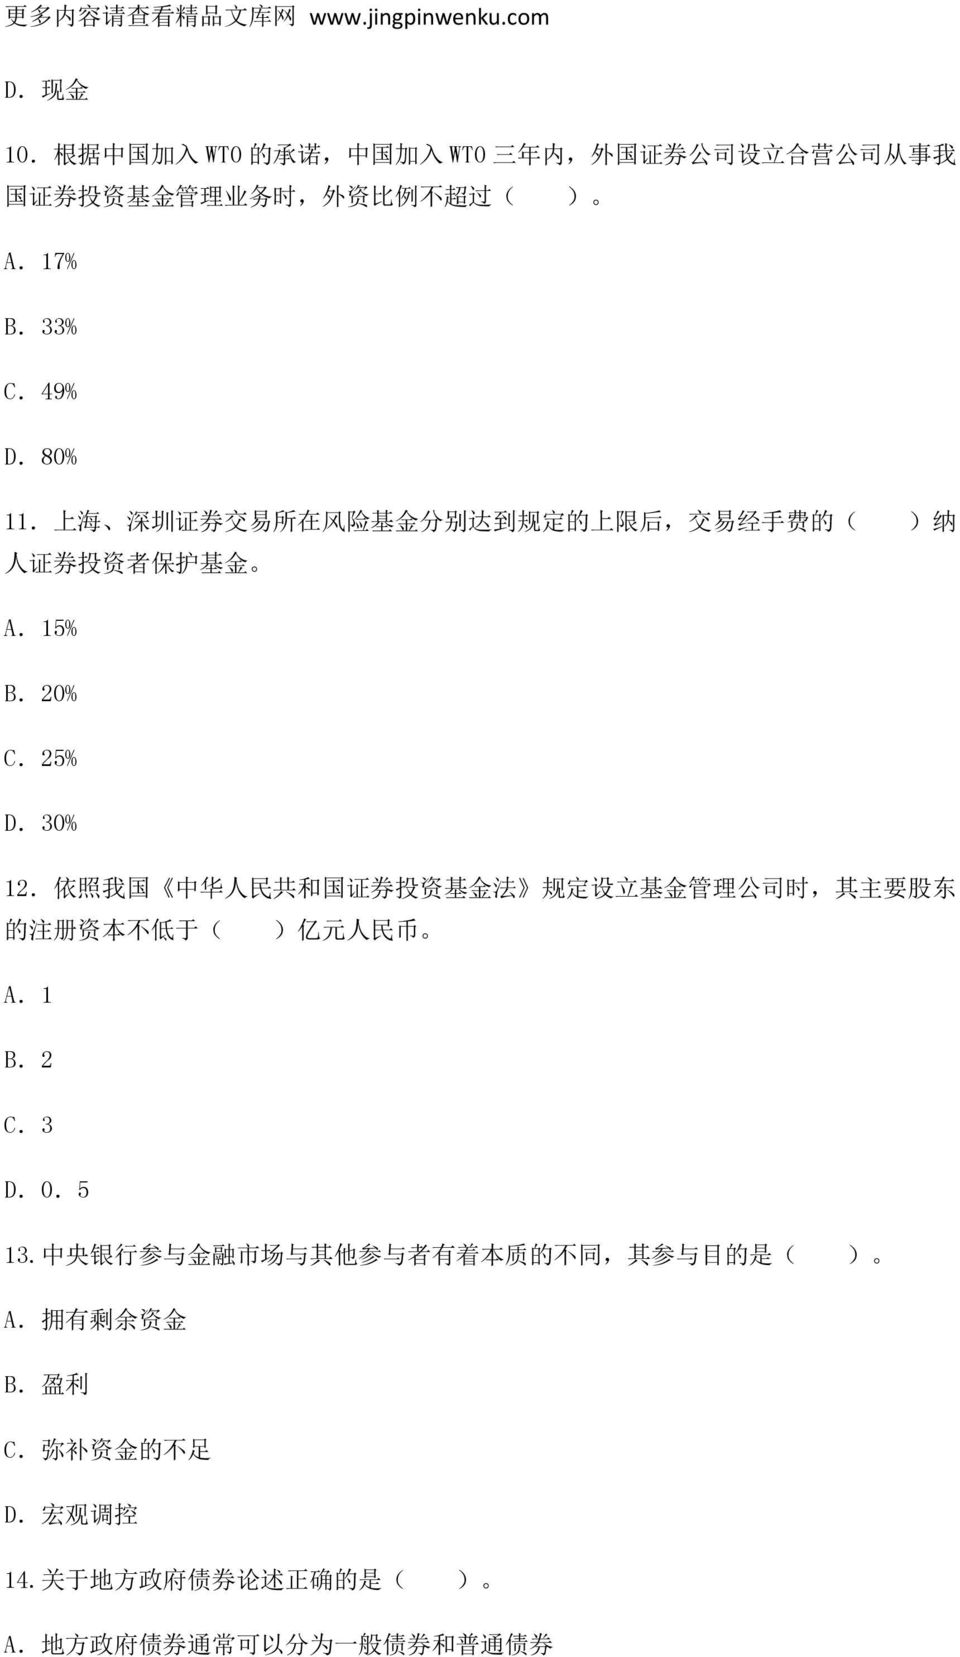 上 海 深 圳 证 券 交 易 所 在 风 险 基 金 分 别 达 到 规 定 的 上 限 后, 交 易 经 手 费 的 ( ) 纳 人 证 券 投 资 者 保 护 基 金 A.15% B.20% C.25% D.30% 12.